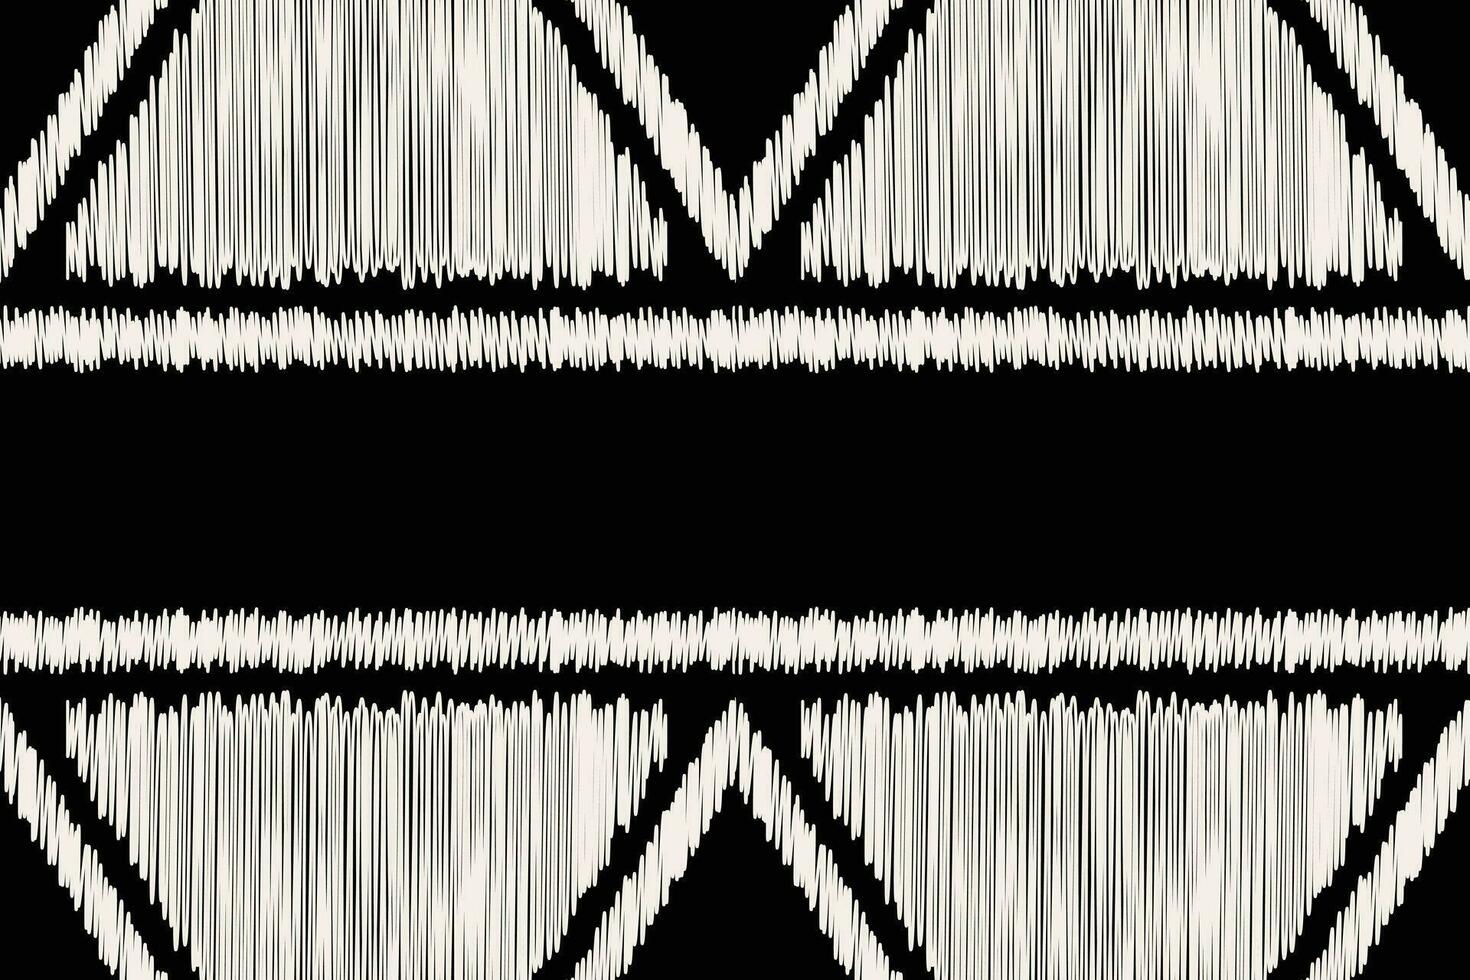 ethnique ikat en tissu modèle géométrique style.africain ikat broderie ethnique Oriental modèle noir Contexte. abstrait, vecteur, illustration.texture, vêtements, cadre, décoration, tapis, motif. vecteur